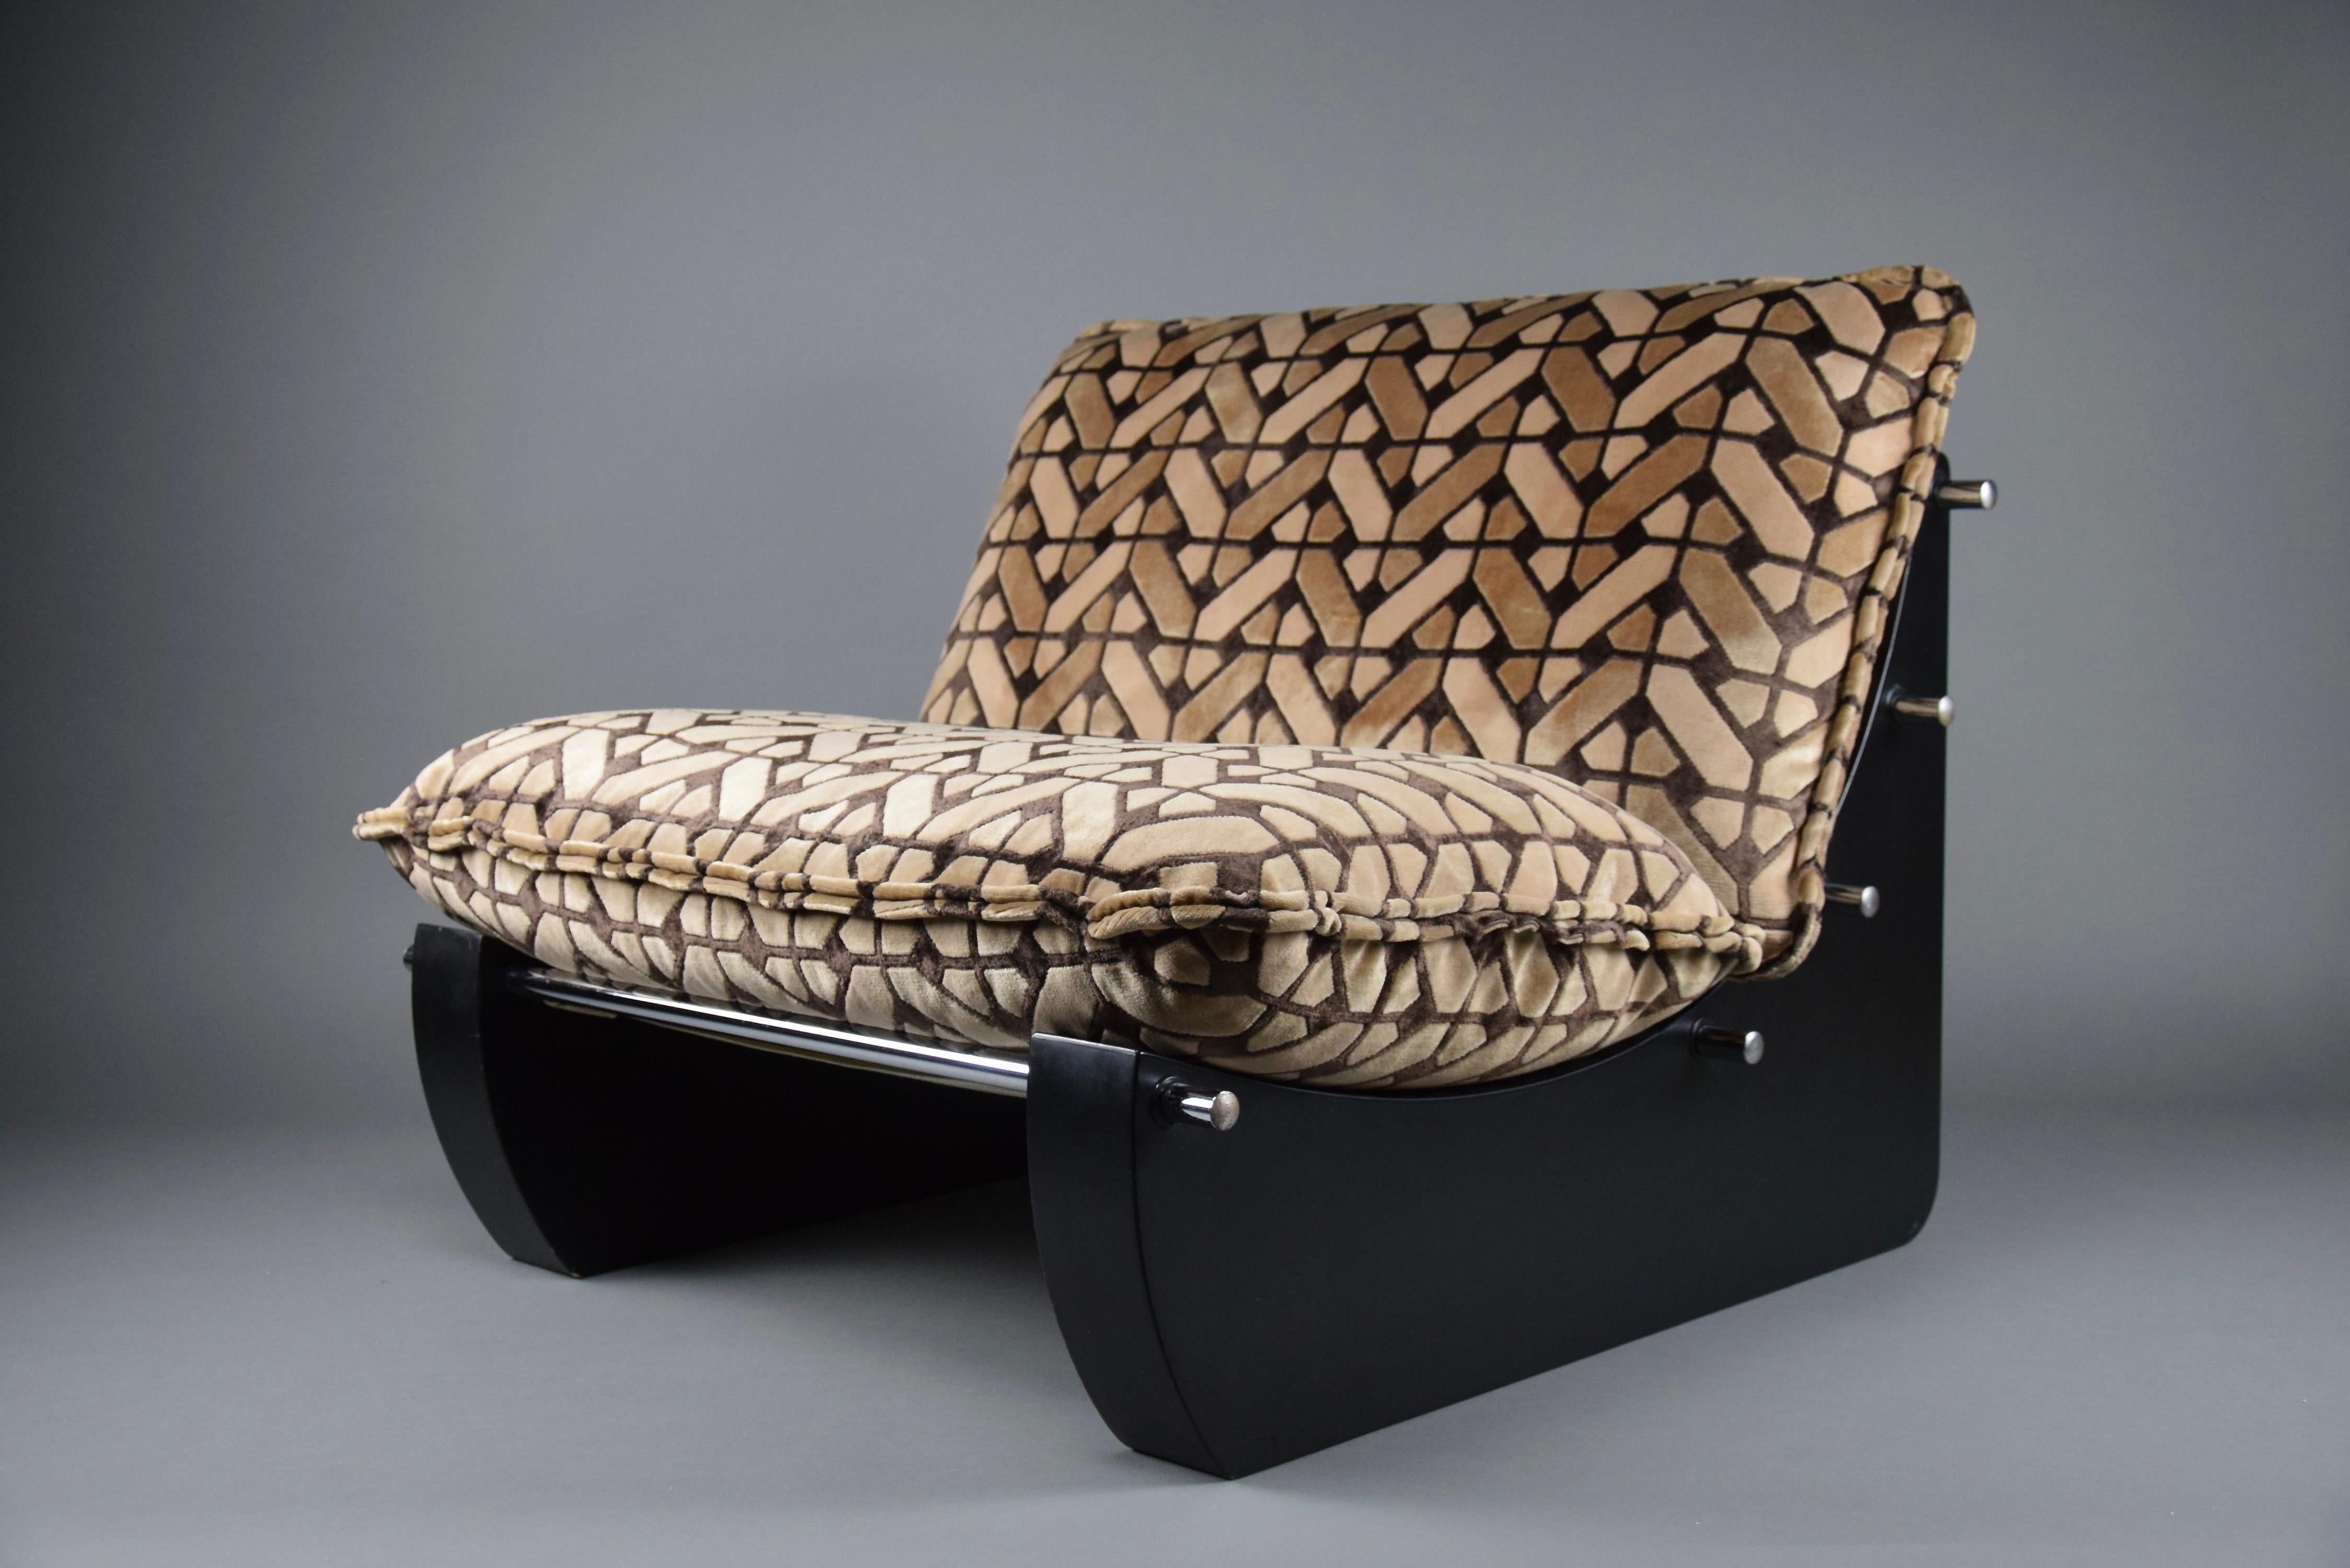 Magnifique et extrêmement confortable chaise longue de la fin des années 1960 au début des années 1970, conçue par Giuseppe Munari pour Poltrone Munari.
Sellerie d'origine en très bon état.
La chaise sera expédiée avec assurance à l'étranger dans